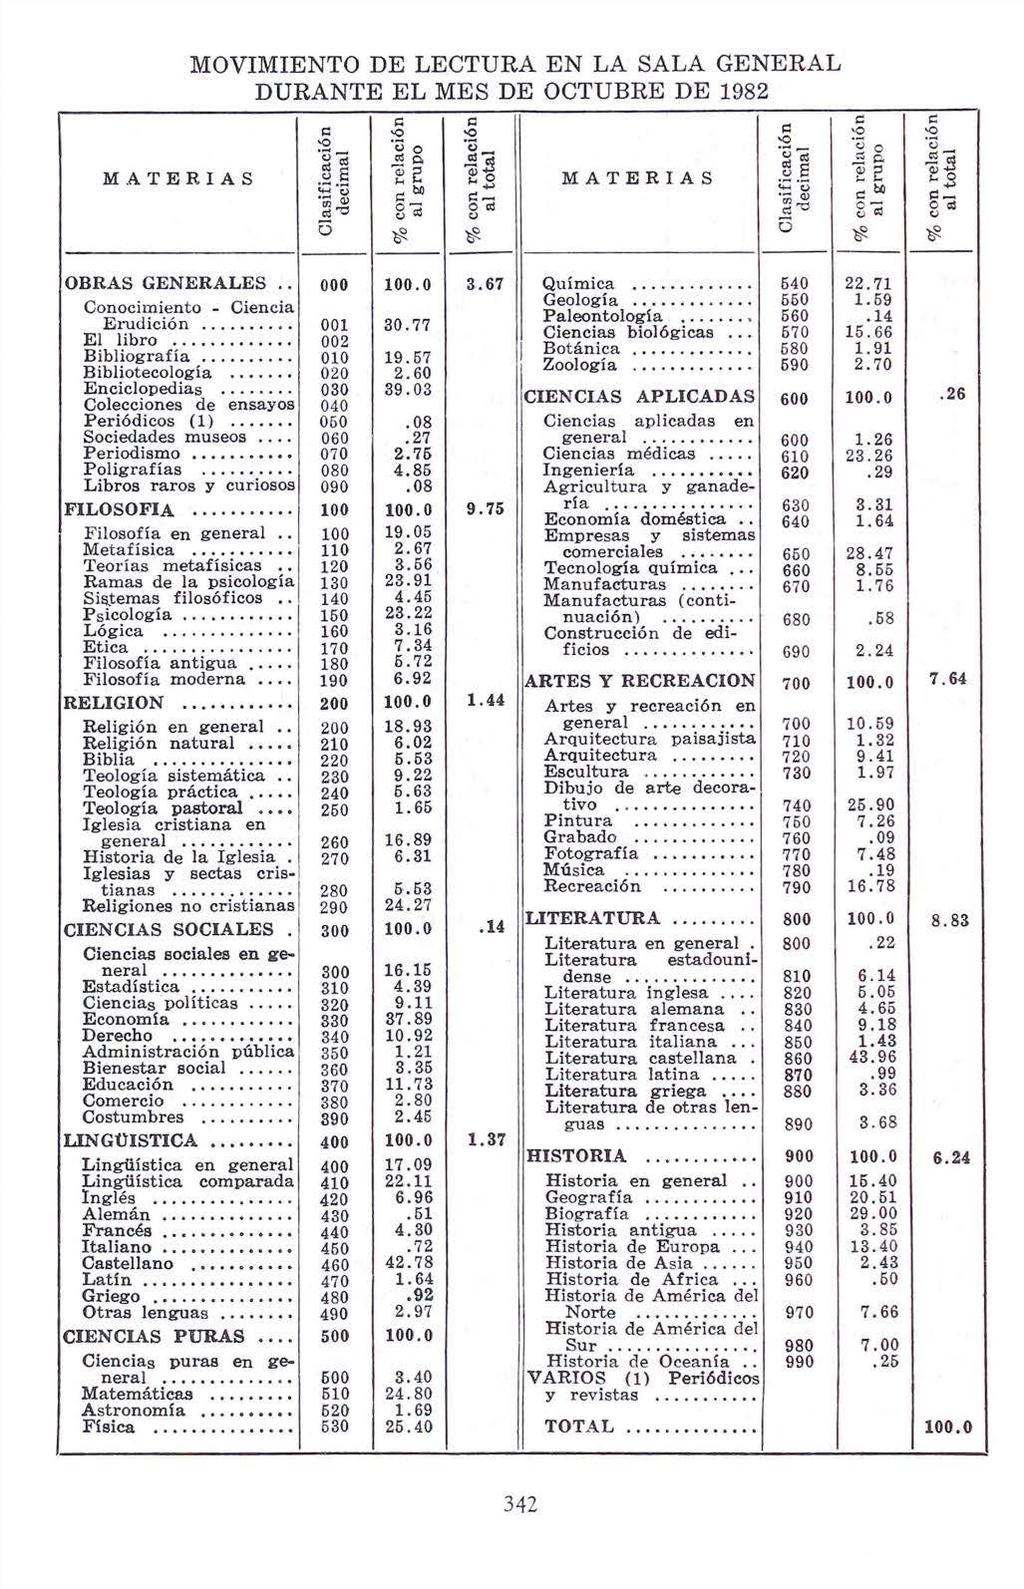 MOVIMIENTO DE LECTURA EN LA SALA GENERAL DURANTE EL MES DE OCTUBRE DE 1982 e: Erudición........ El libro... Bibliografía Bibliotecologia.... Enciclopedias.... Colecciones de ensayos Periódicos (1).